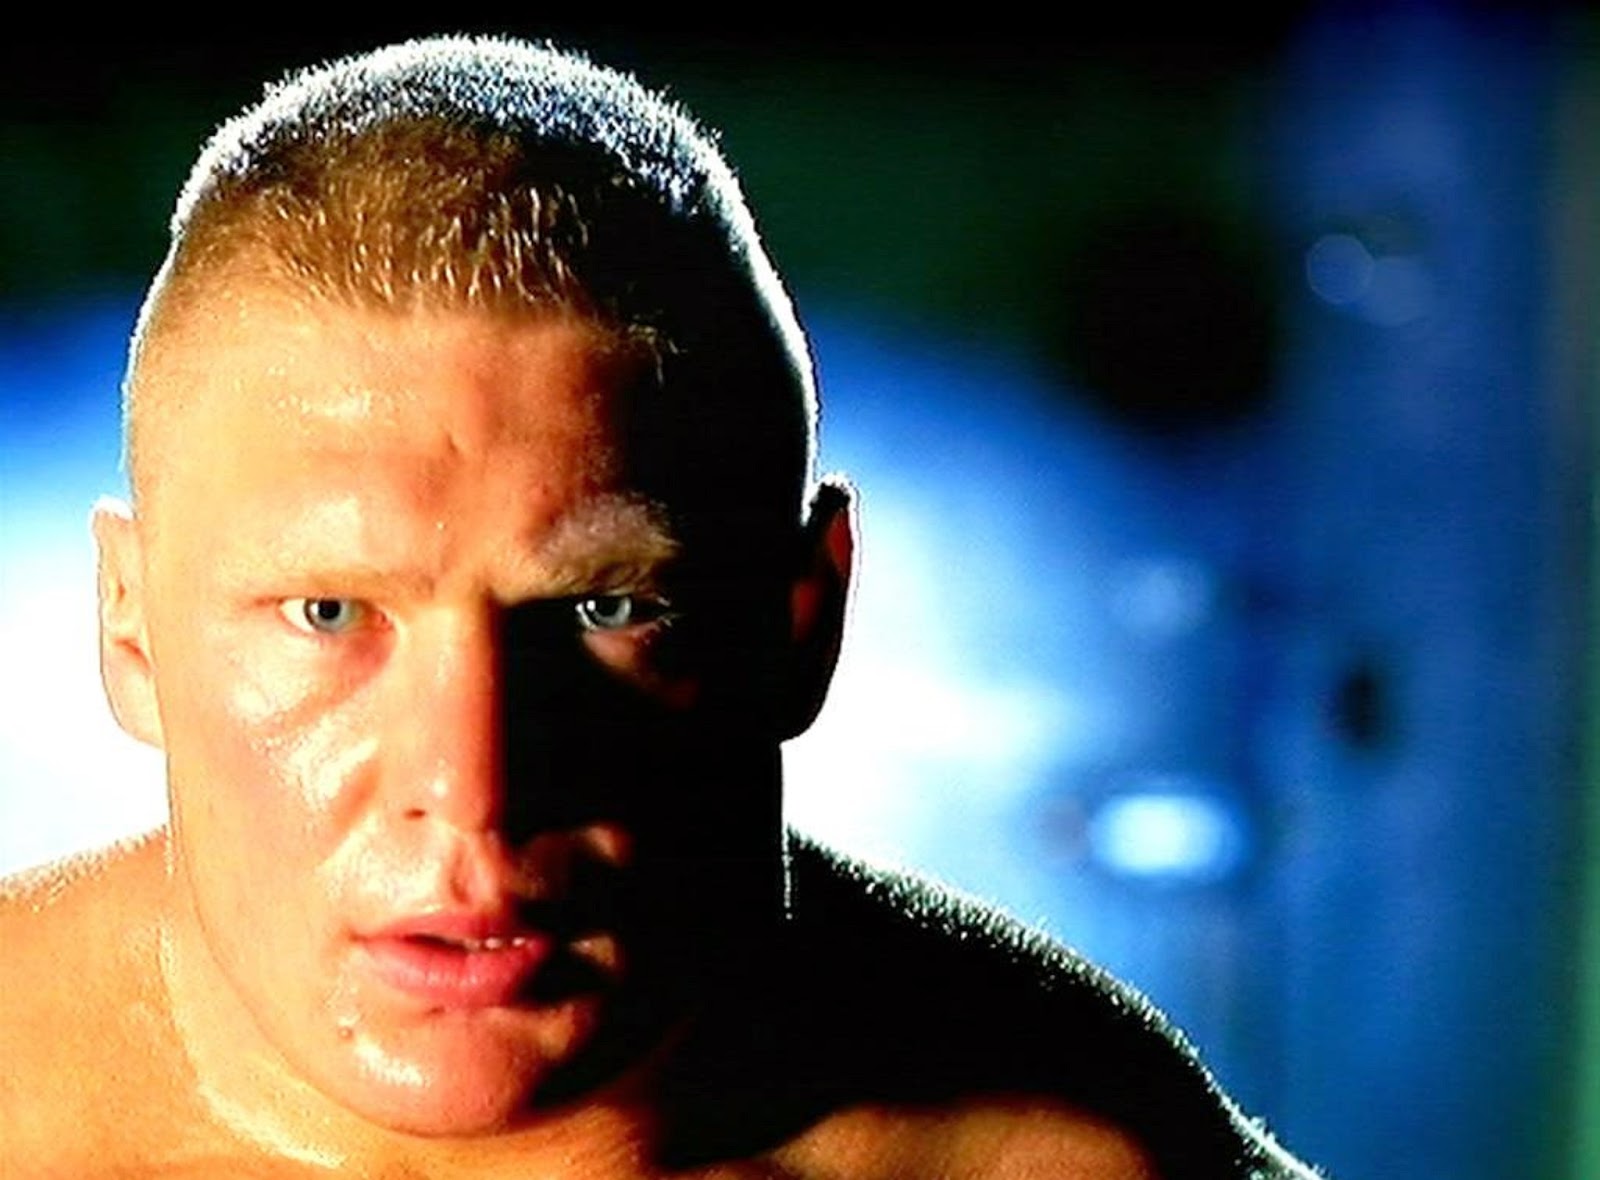 Brock Lesnar Hd Free Wallpapers | WWE HD WALLPAPER FREE DOWNLOAD